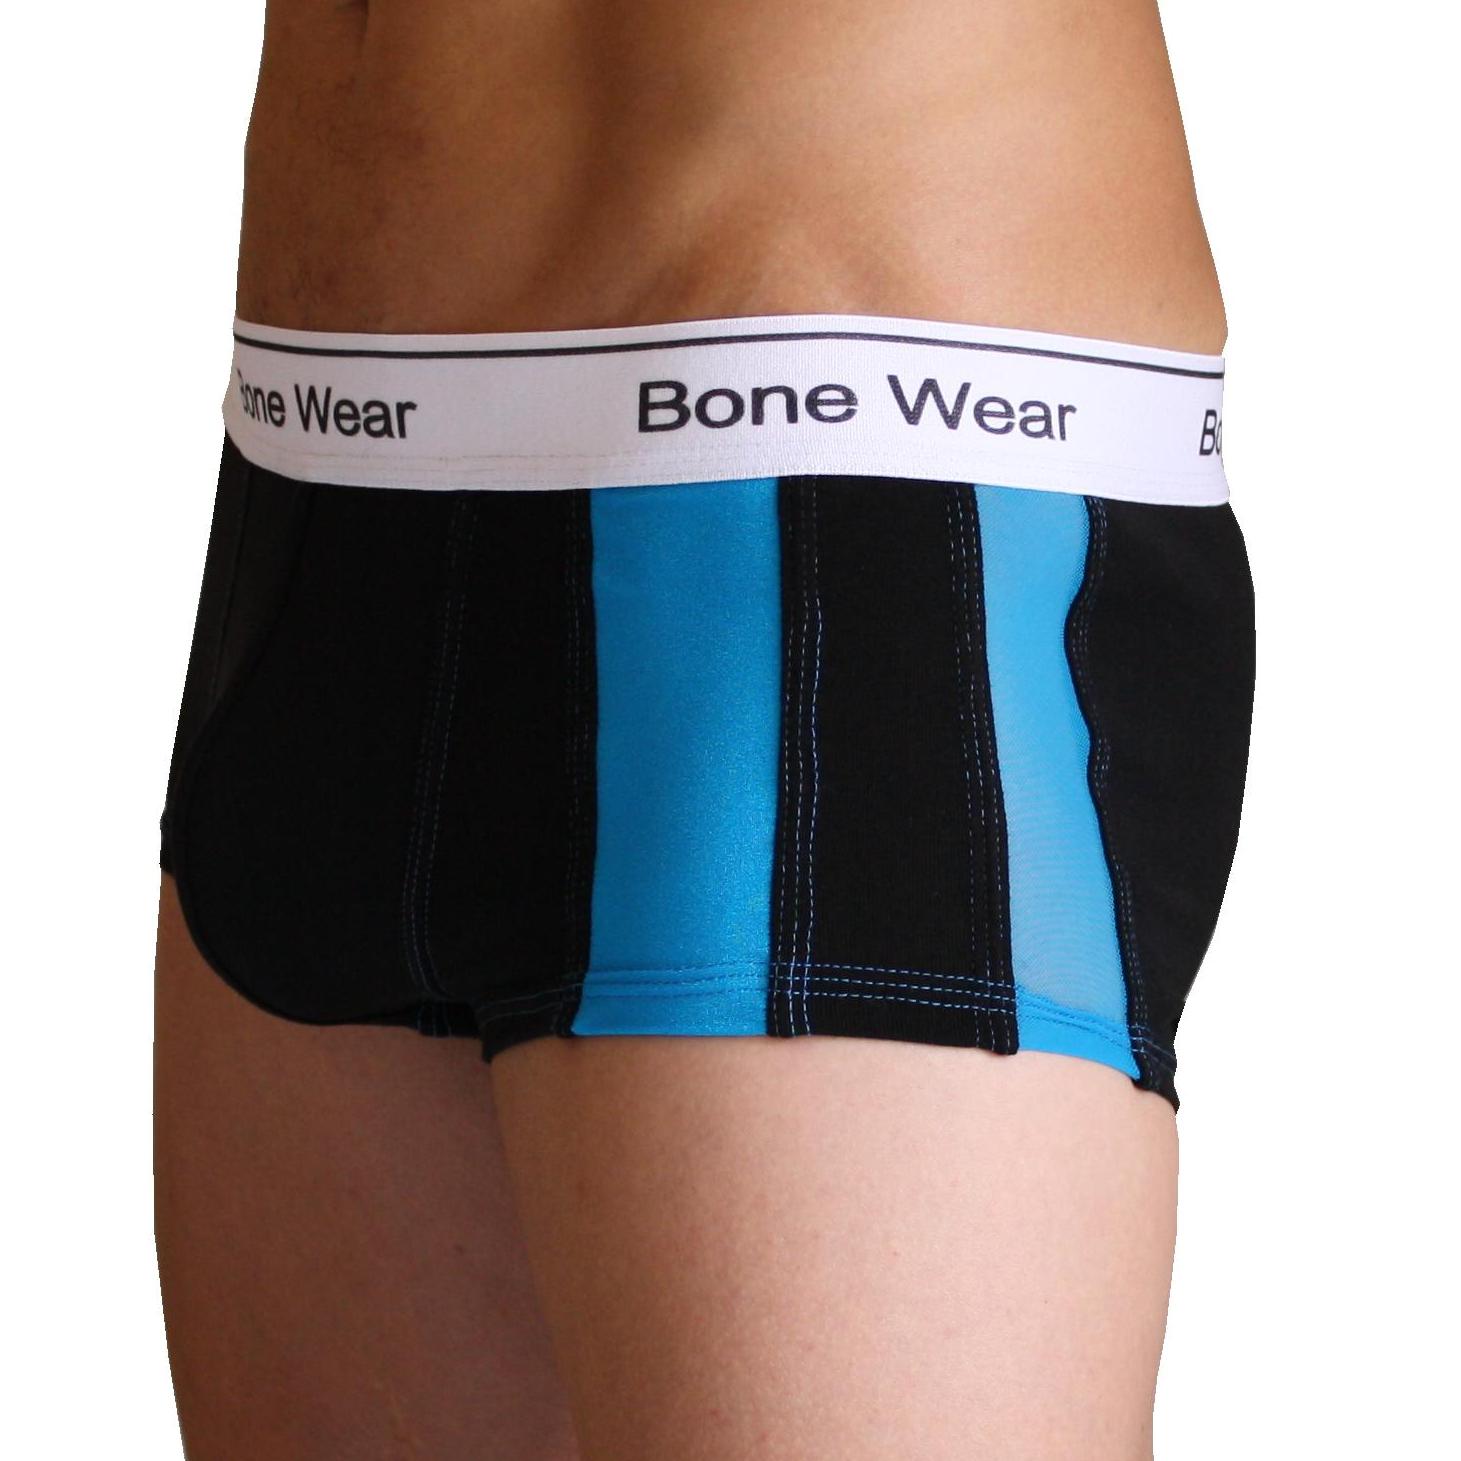 New design from Bone Wear – Underwear News Briefs